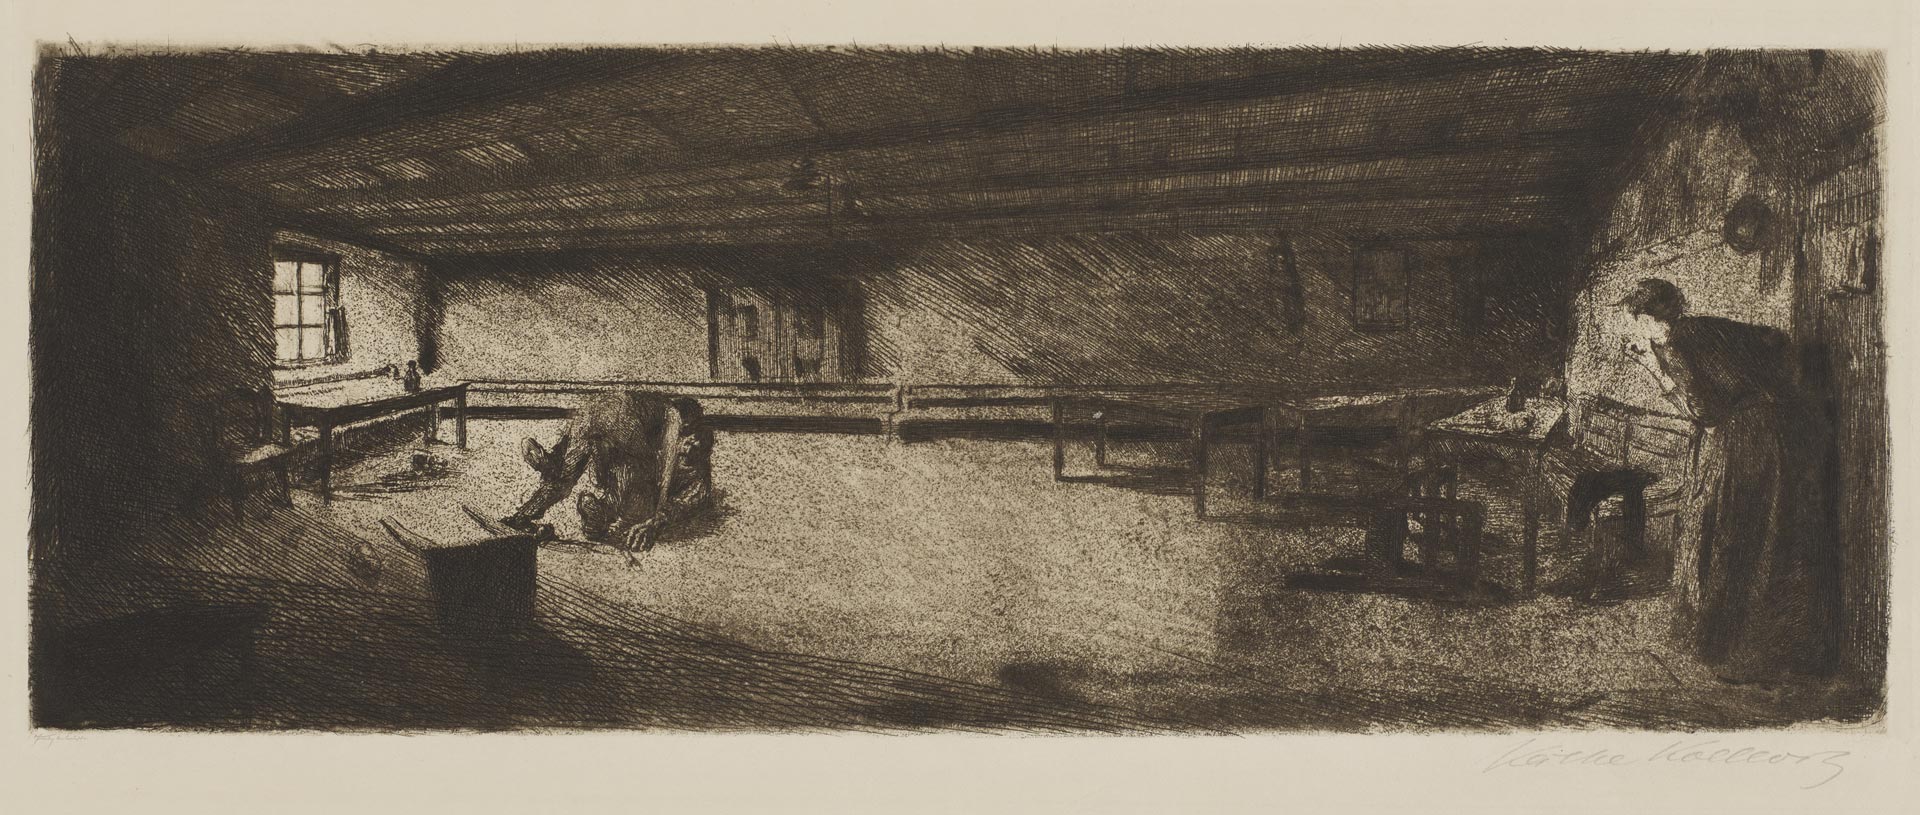 Käthe Kollwitz, Scène de Germinal, 1893, eau-forte, pointe sèche, émeri, Kn 19 III b